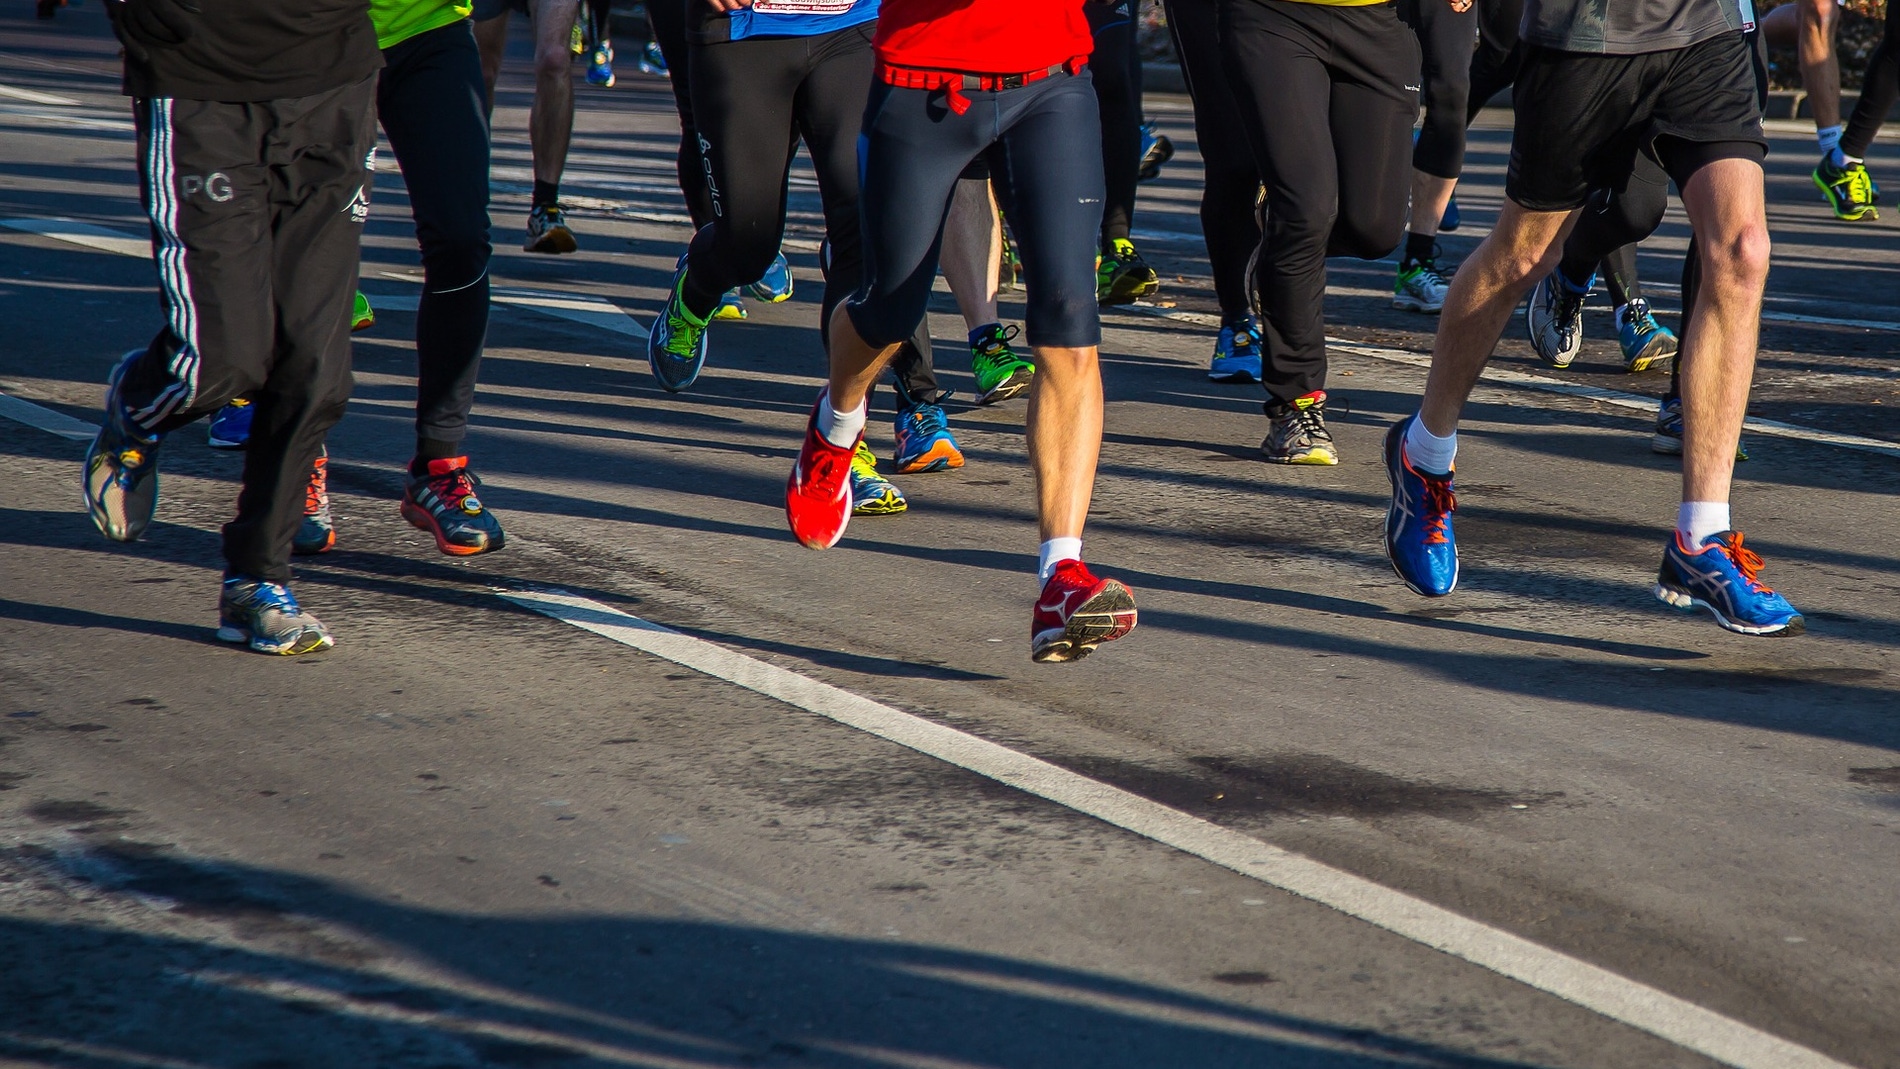 Los atletas de media maraton corren de manera similar aunque tengan distinto nivel